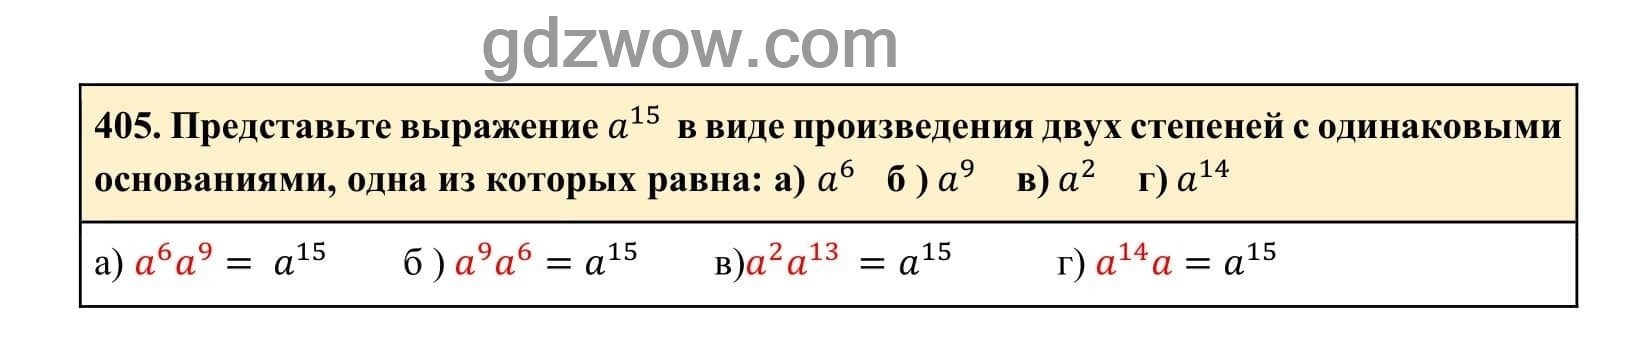 Упражнение 405 - ГДЗ по Алгебре 7 класс Учебник Макарычев (решебник) - GDZwow